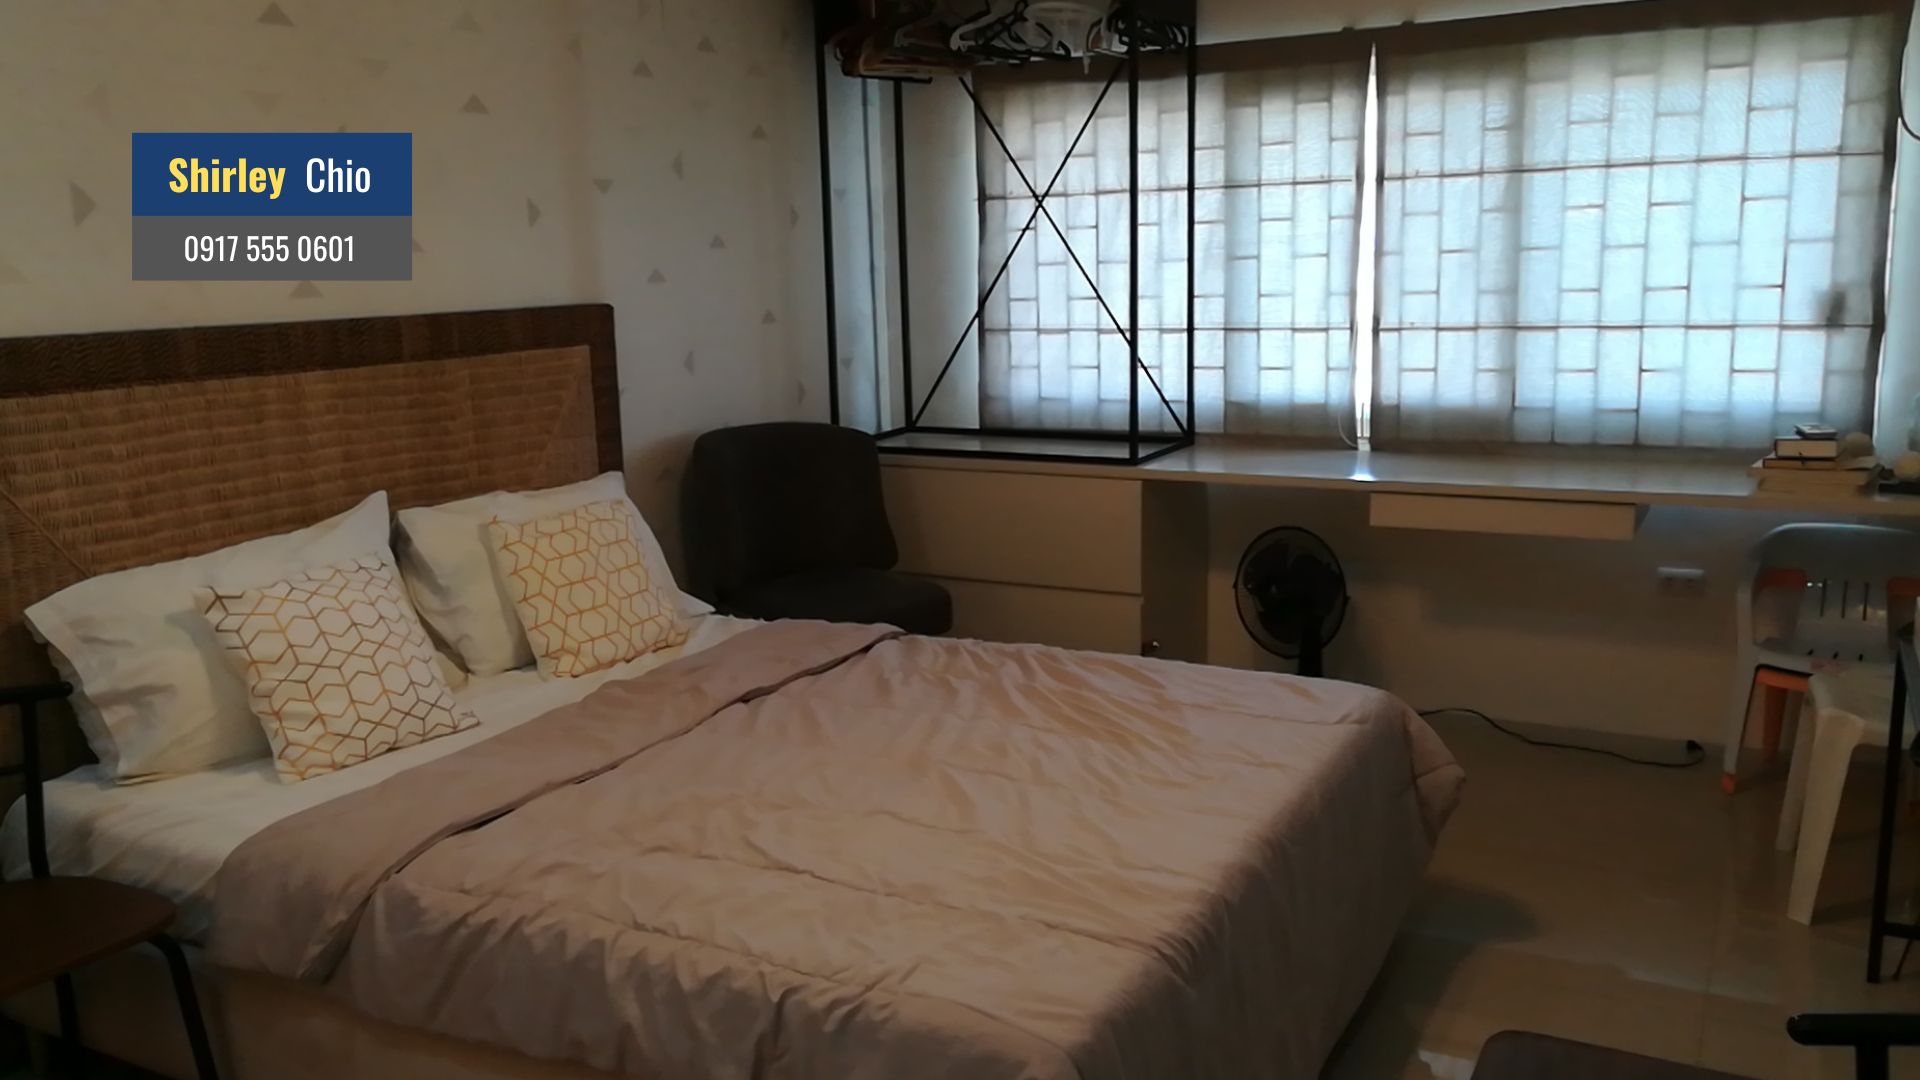 San Marino Residences Studio Condominium for Rent in Cebu City